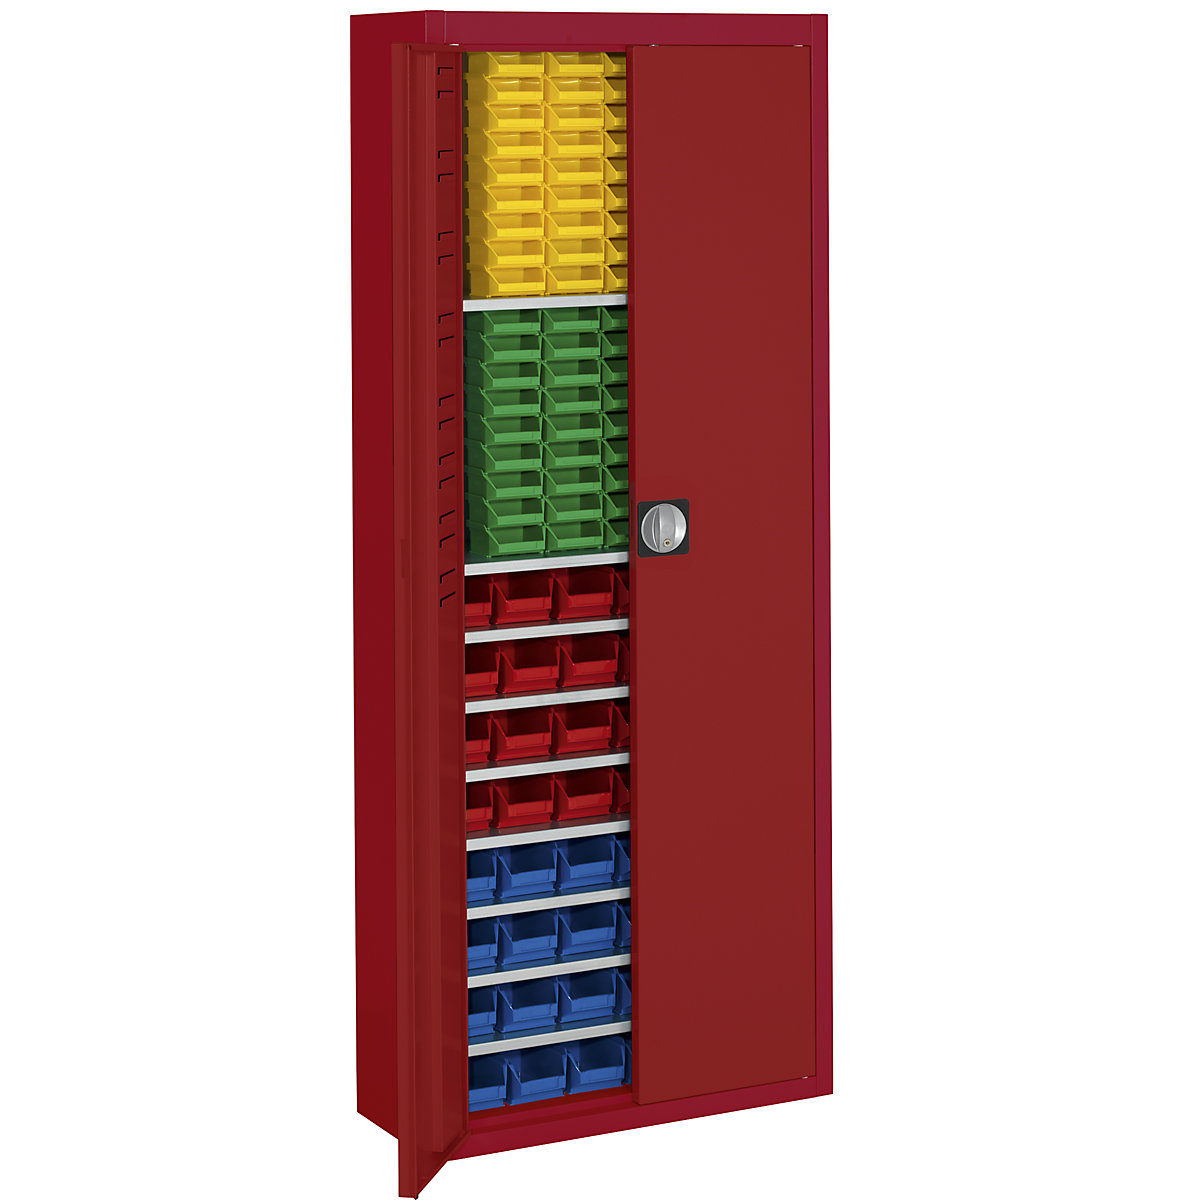 Skladiščna omara z odprtimi skladiščnimi posodami – mauser, VxŠxG 1740 x 680 x 280 mm, ena barva, rdeča, 138 posod-10